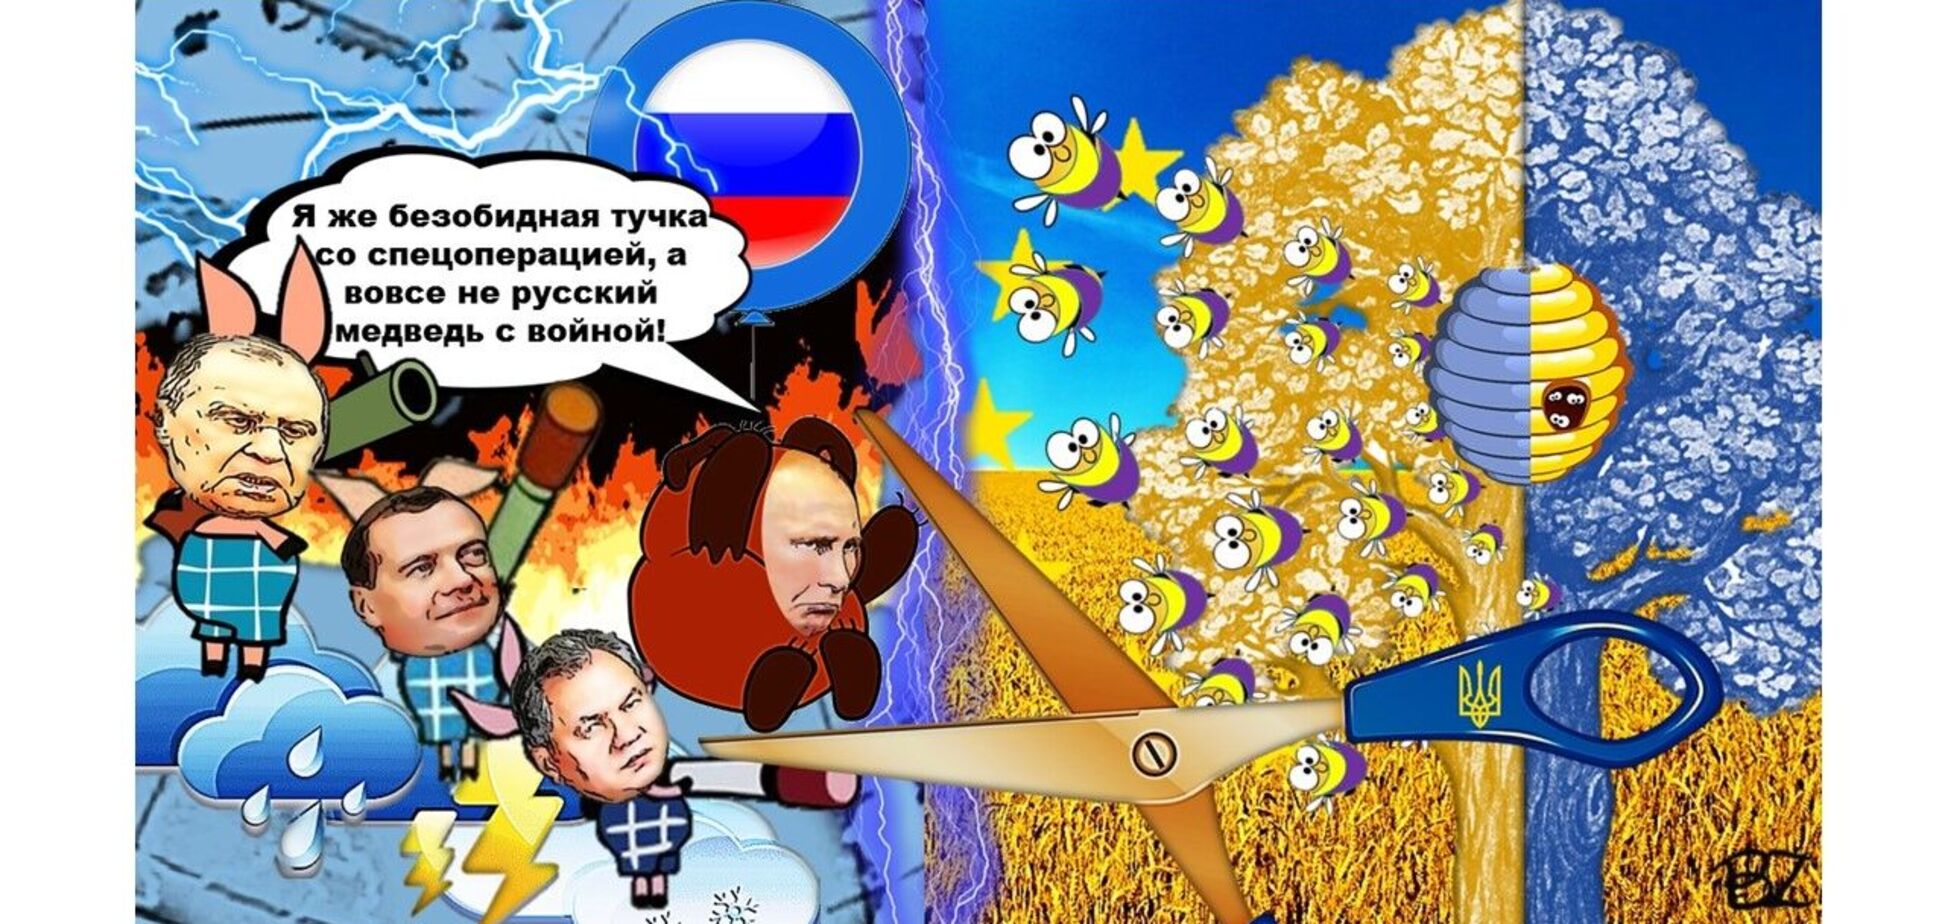 У гильотины нет альтернативы: без имперской головы Россия станет менее опасной 